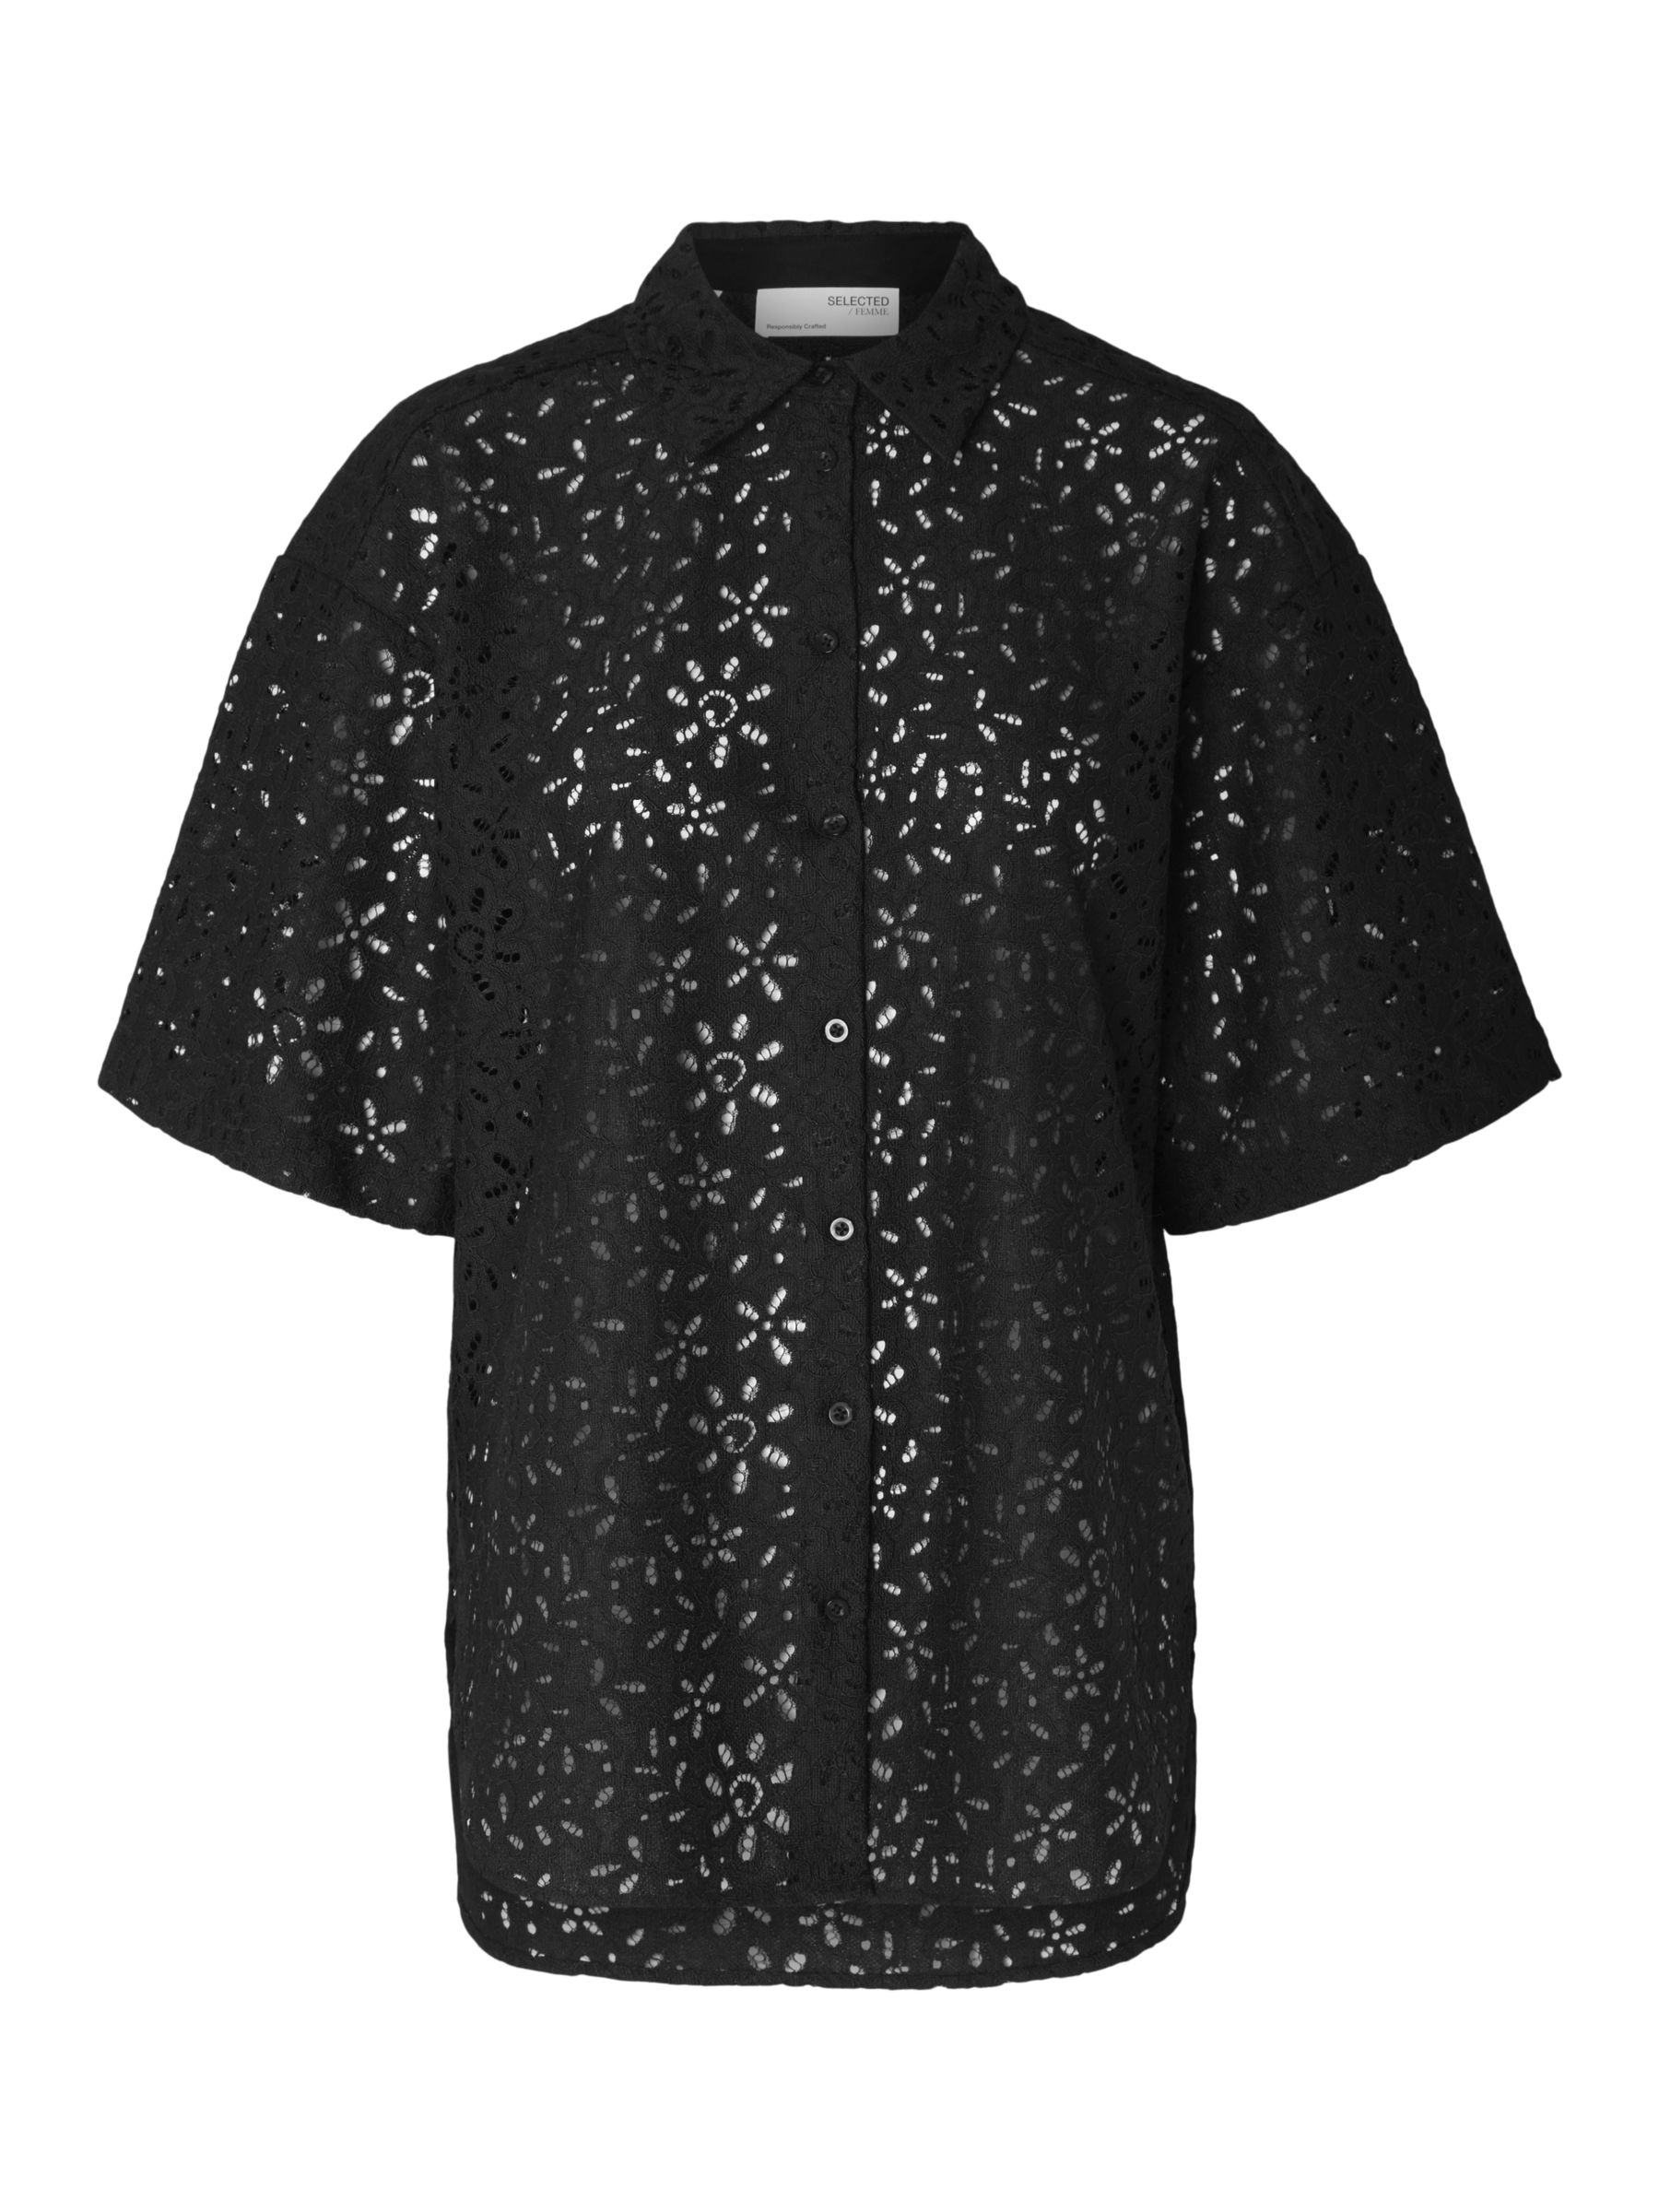 Buy SELECTED FEMME Karola Oversized Lace Shirt, Black Online at johnlewis.com